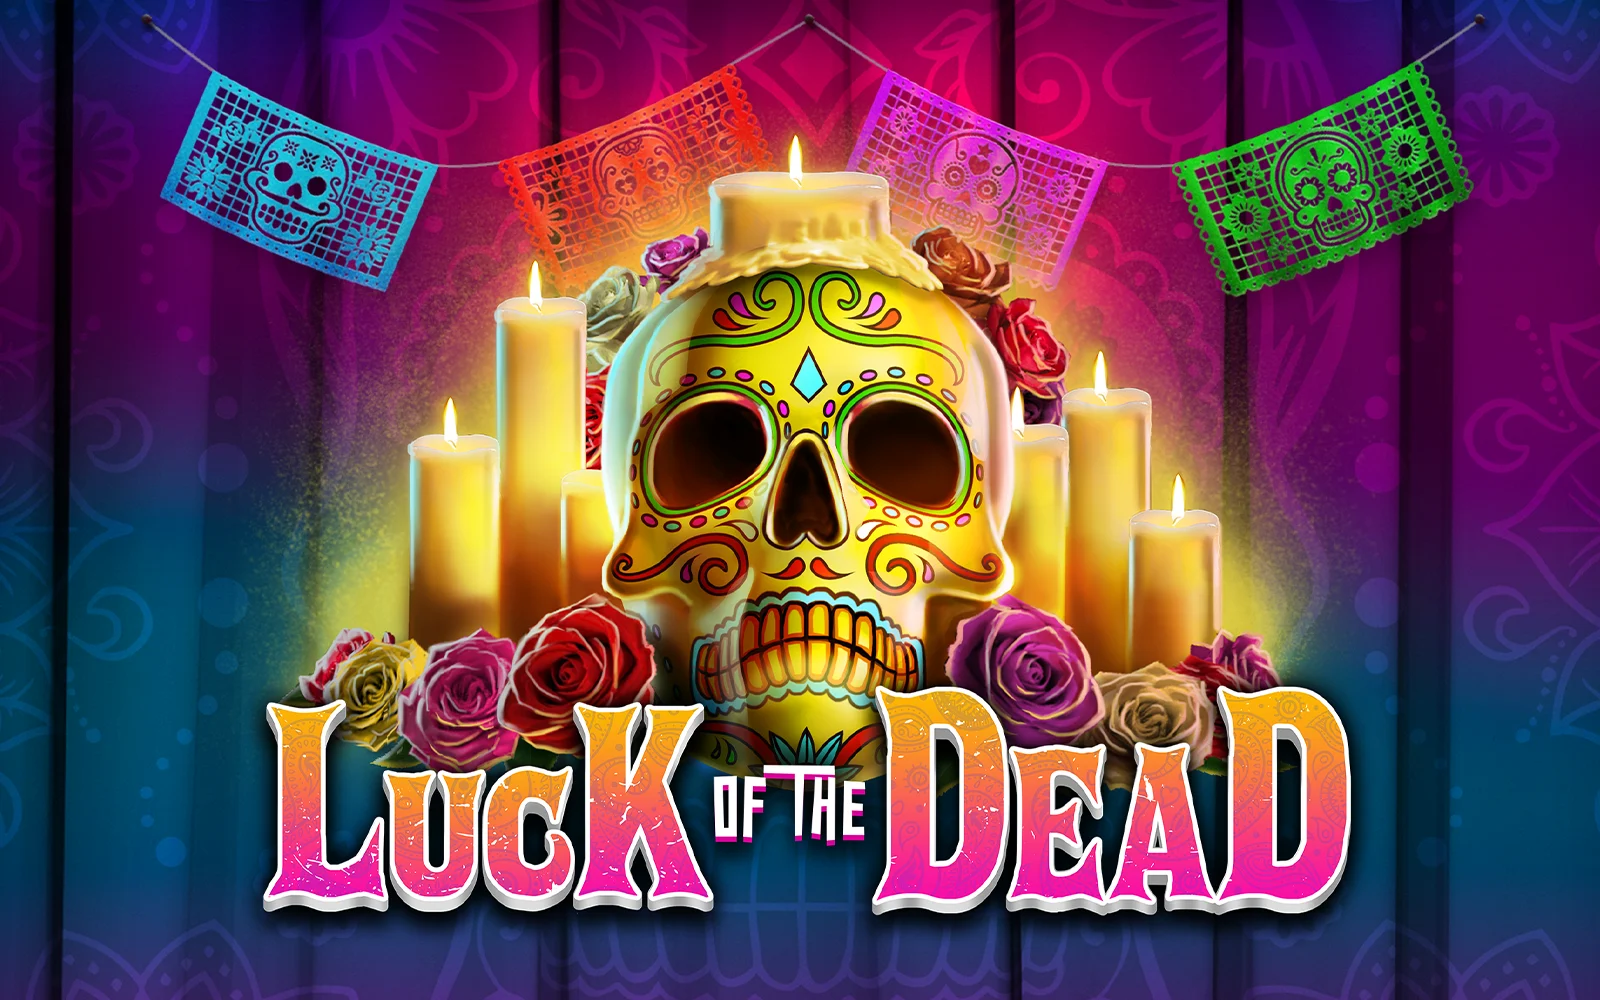 Joacă Luck of the Dead în cazinoul online Starcasino.be